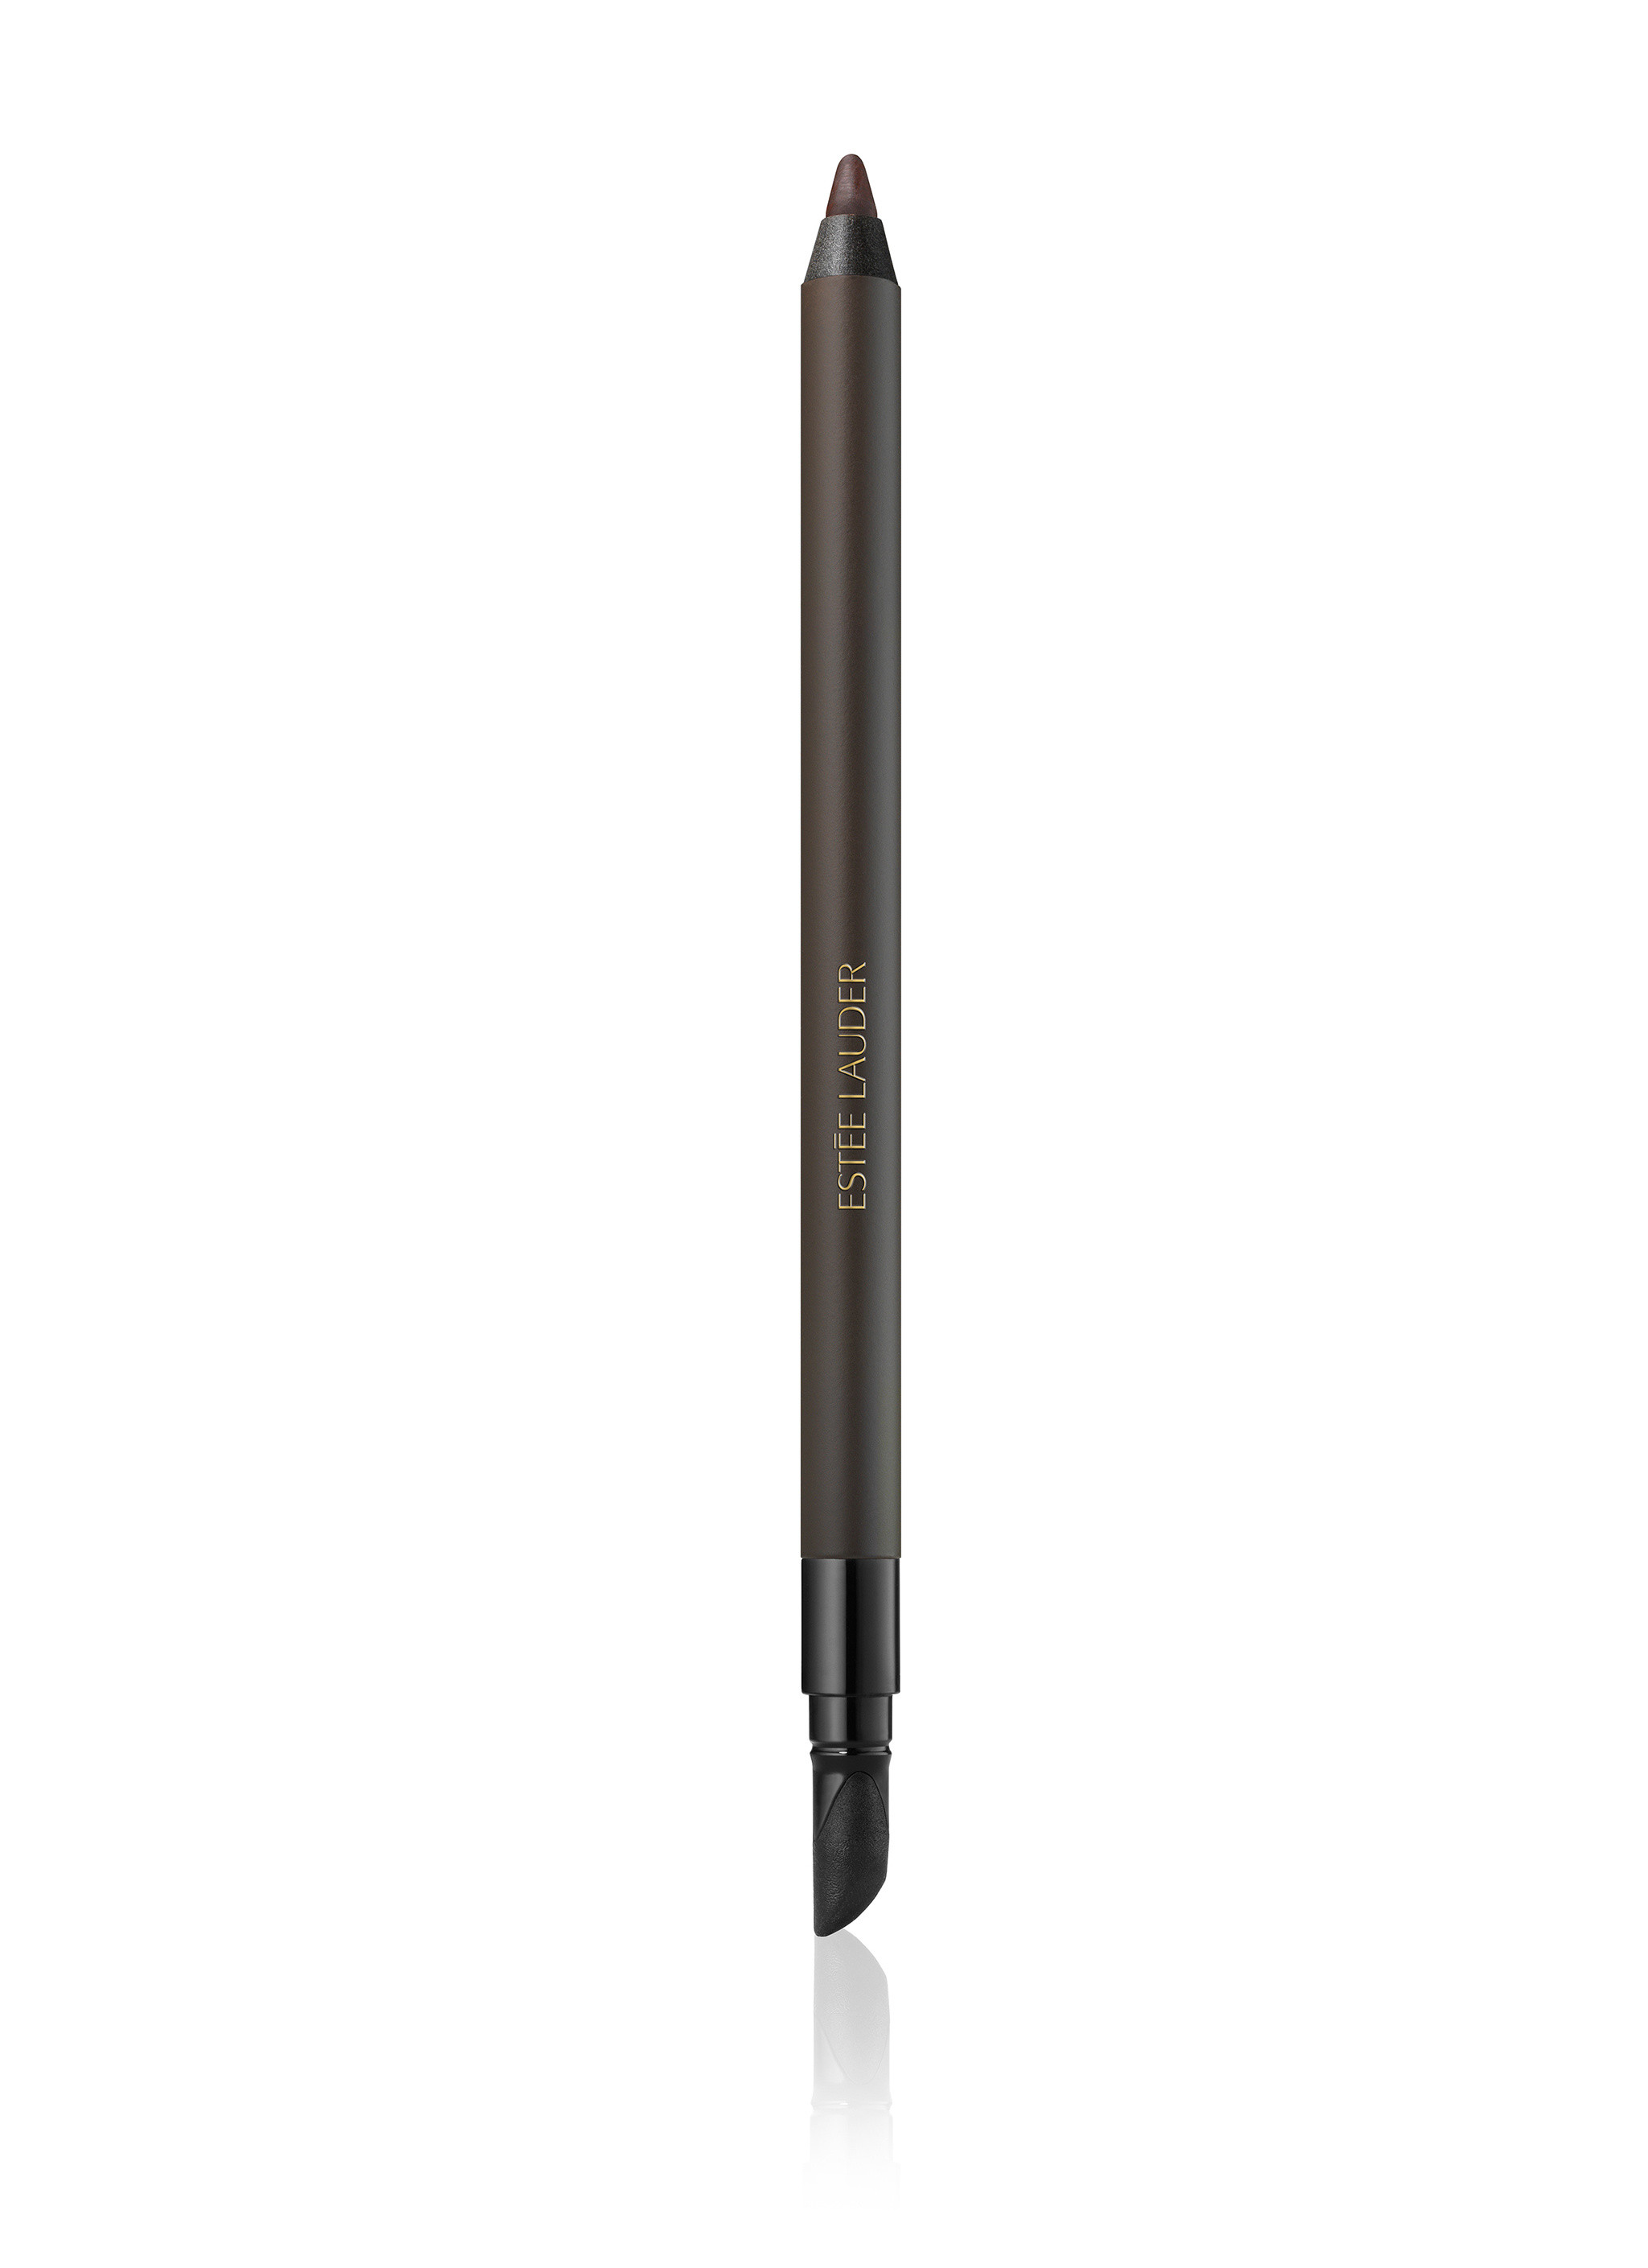 Double wear 24h waterproof gel eye pencil - 02 Espresso, Dark Brown, large image number 0